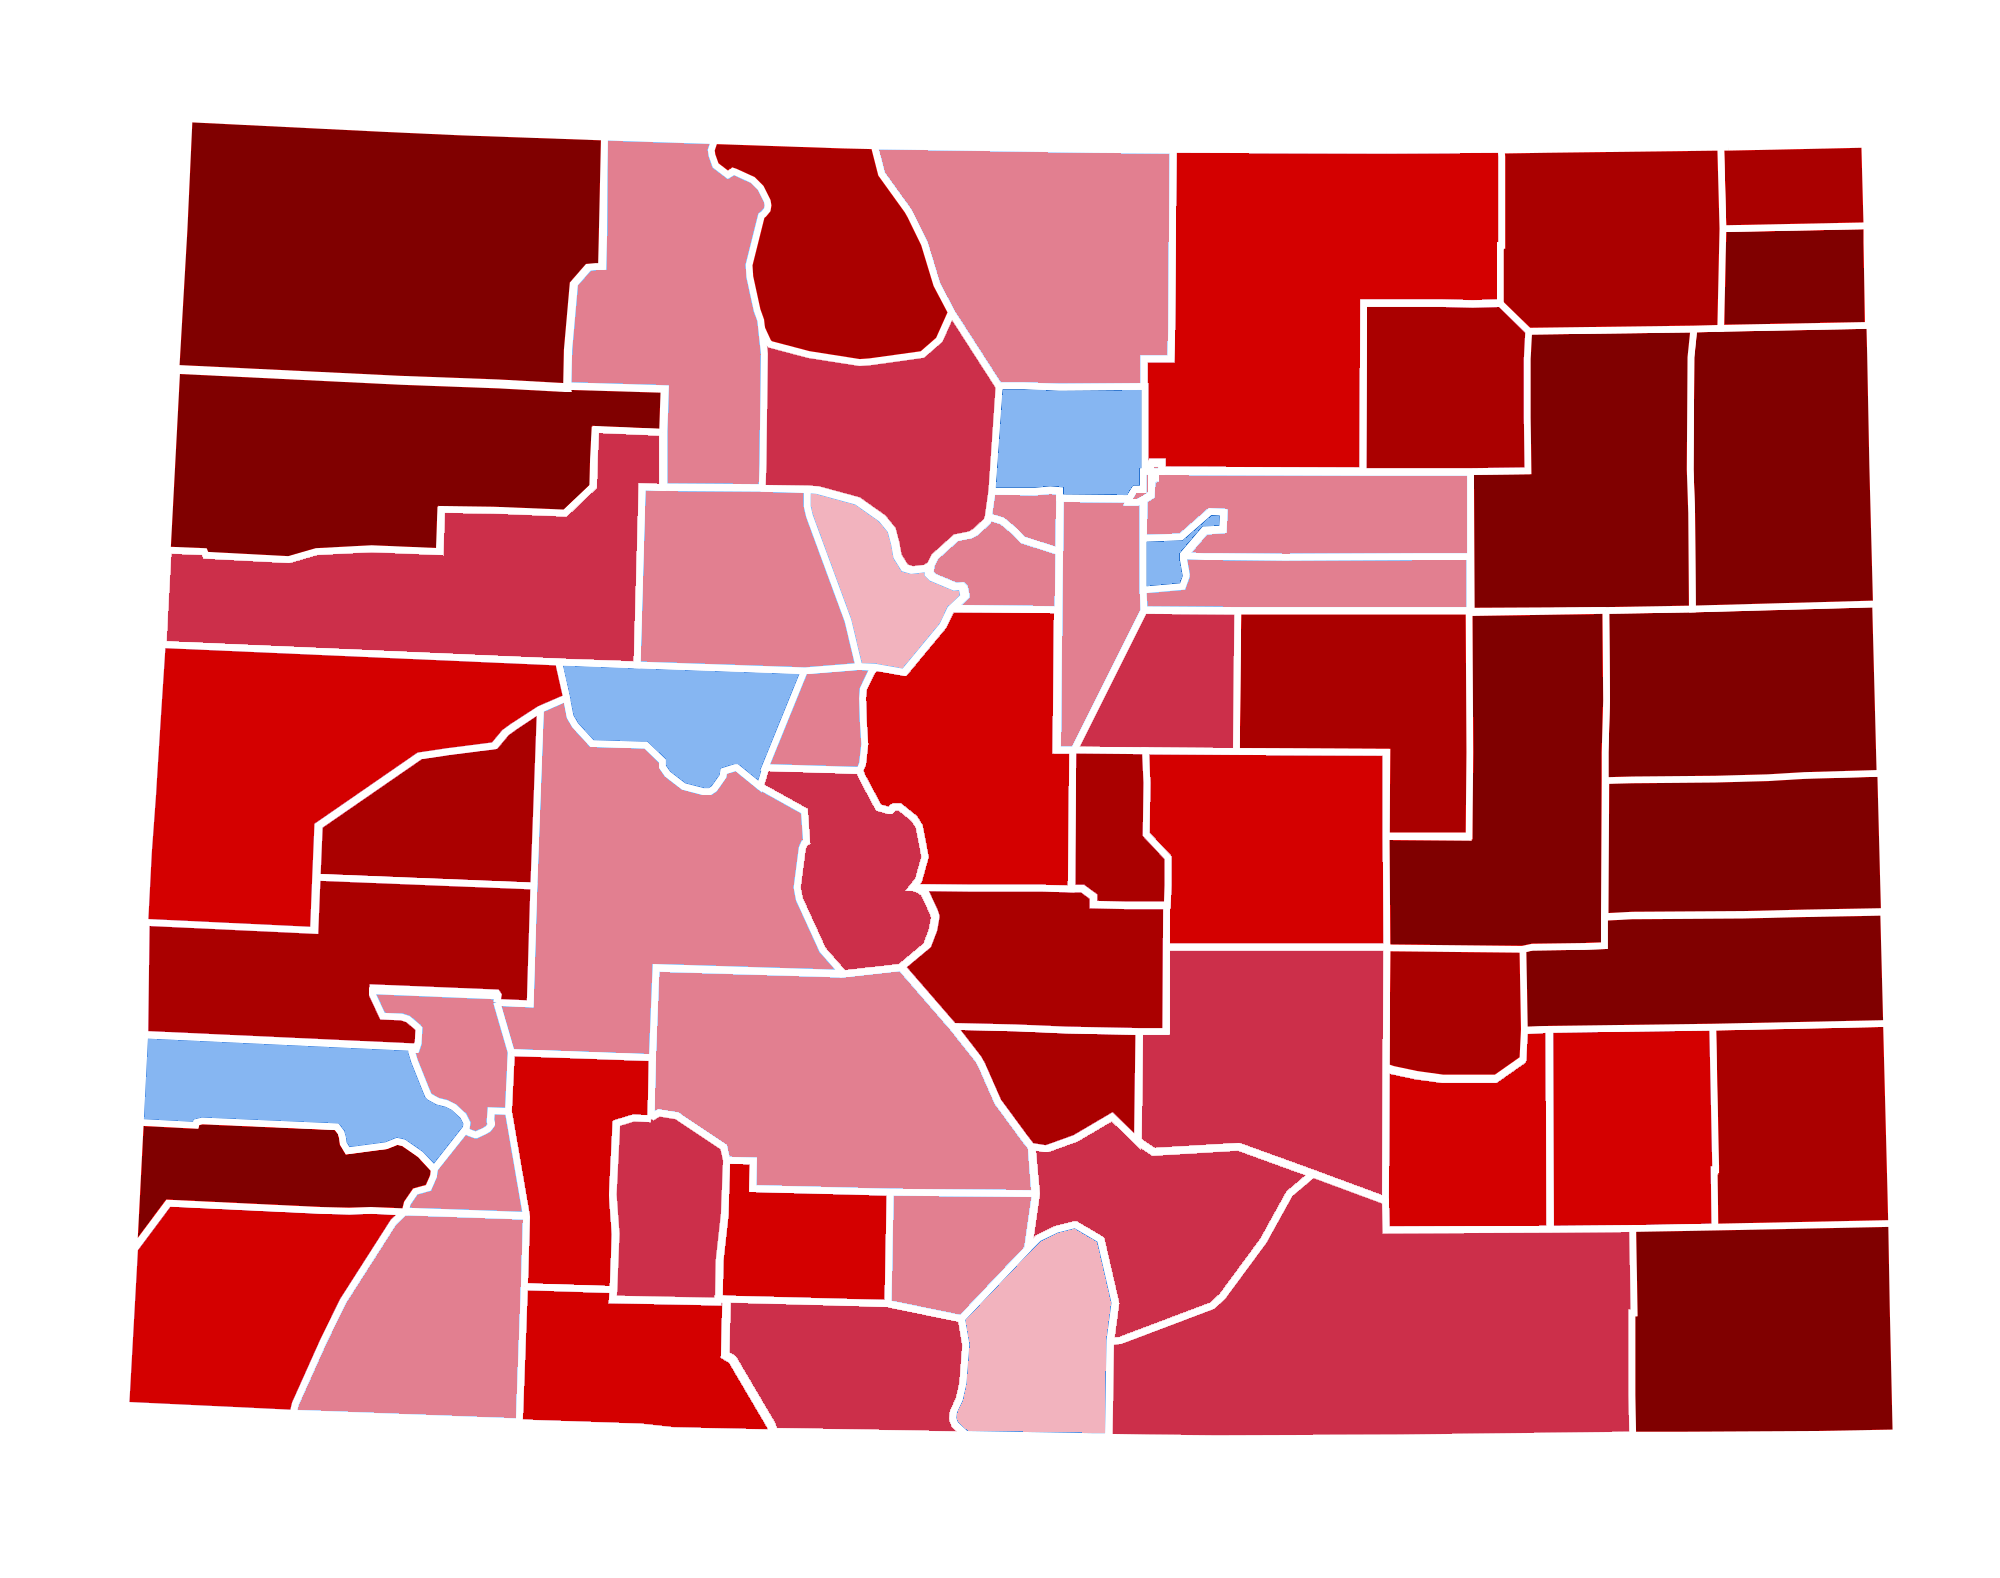 Colorado_Presidential_Election_Results_2016_Republican_Landslide_15.06%.png